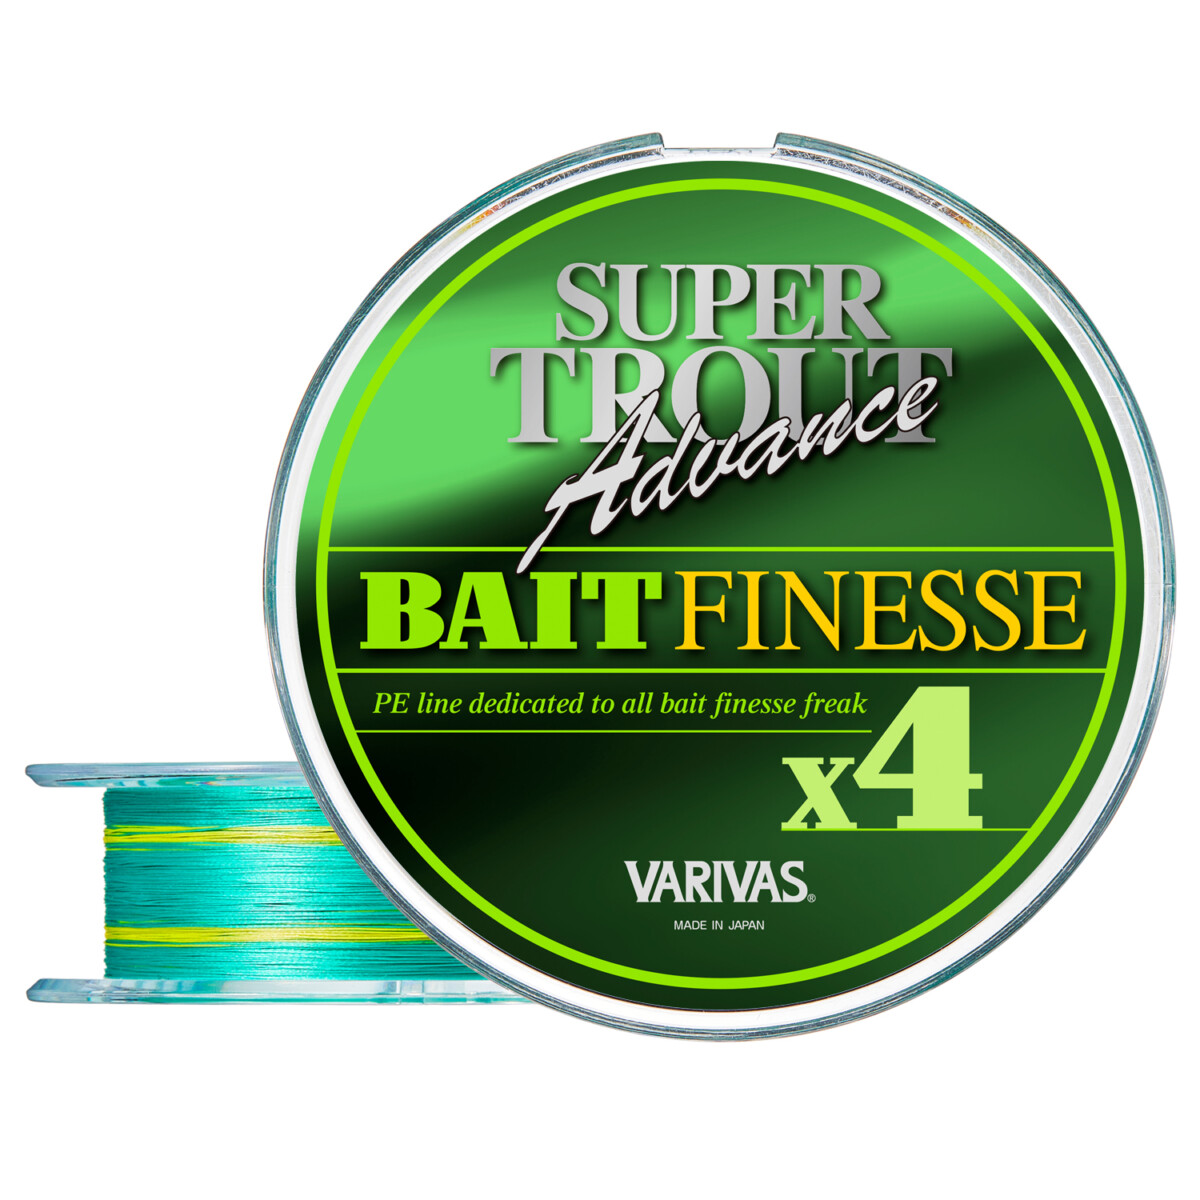 Super Trout Advance Bait Finesse PE x4 – VARIVAS